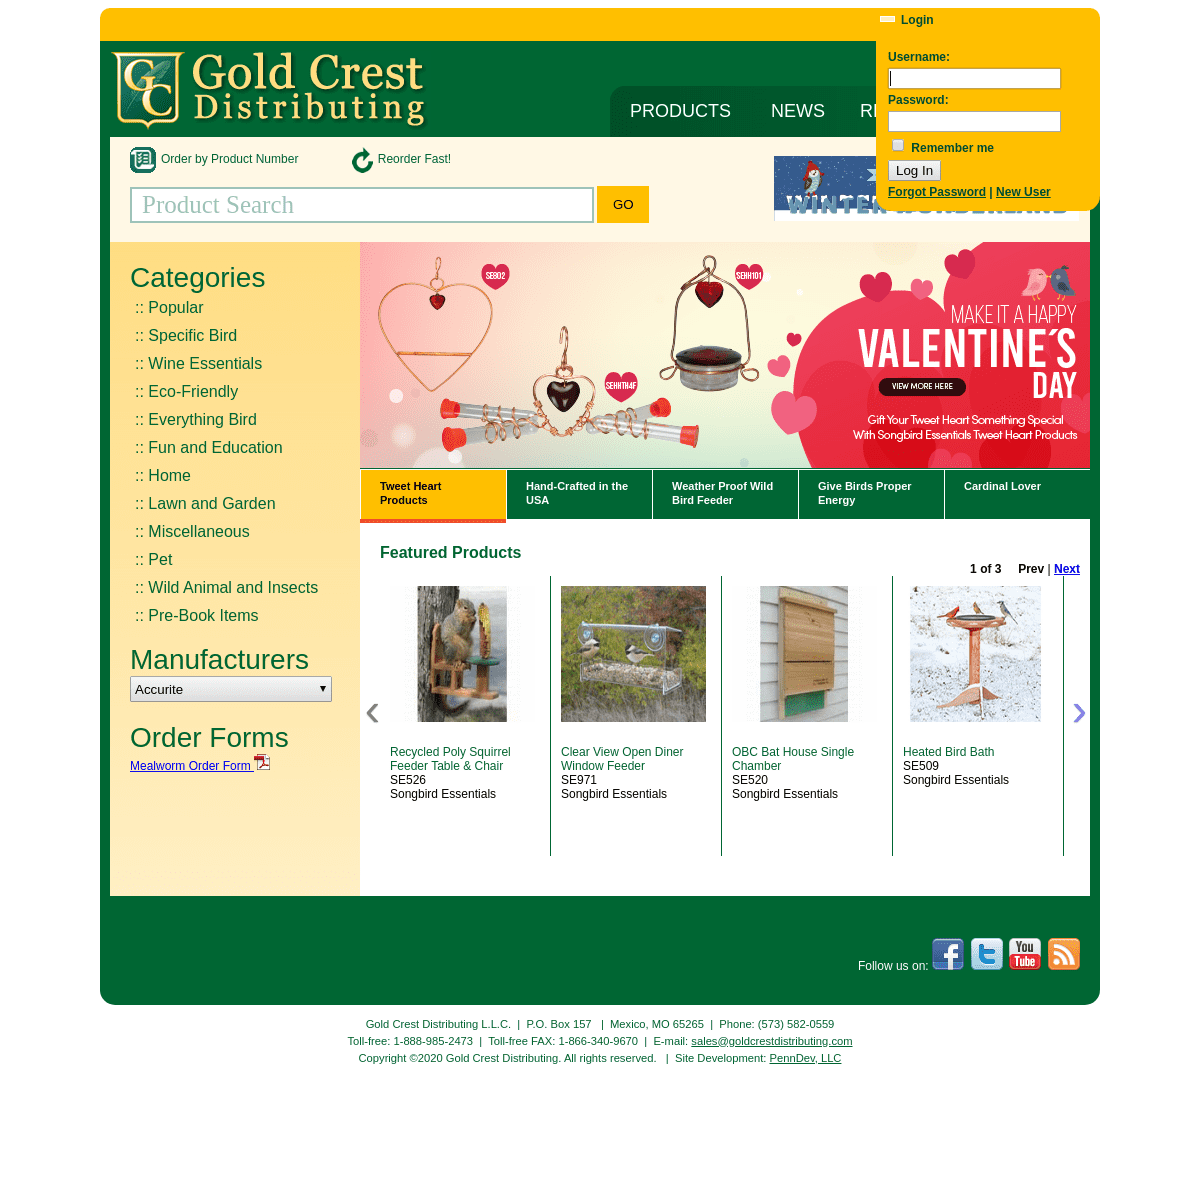 A complete backup of goldcrestdistributing.com